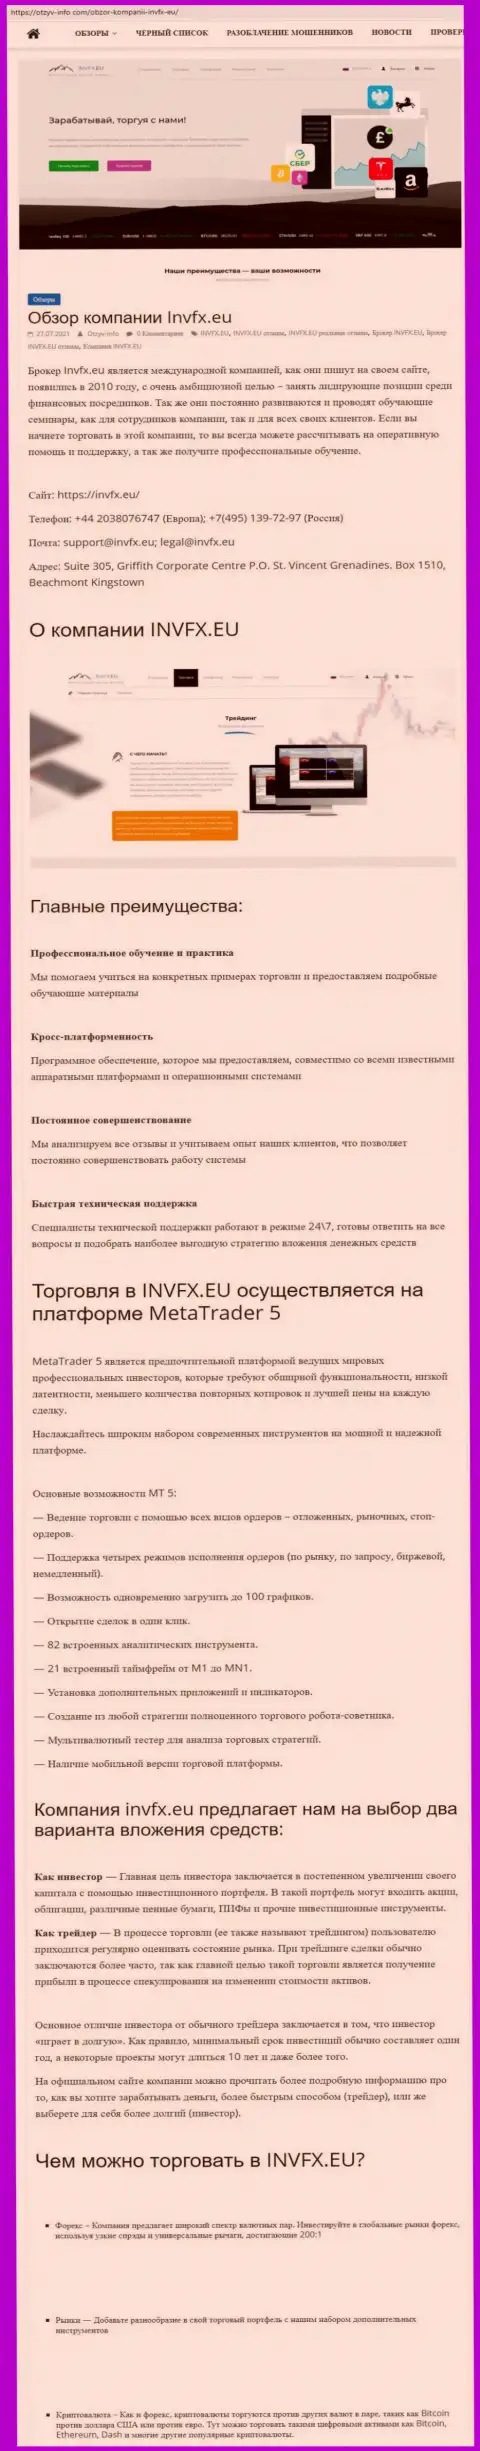 Веб-ресурс otzyv-info com разместил статью о Форекс-компании Invesco Limited